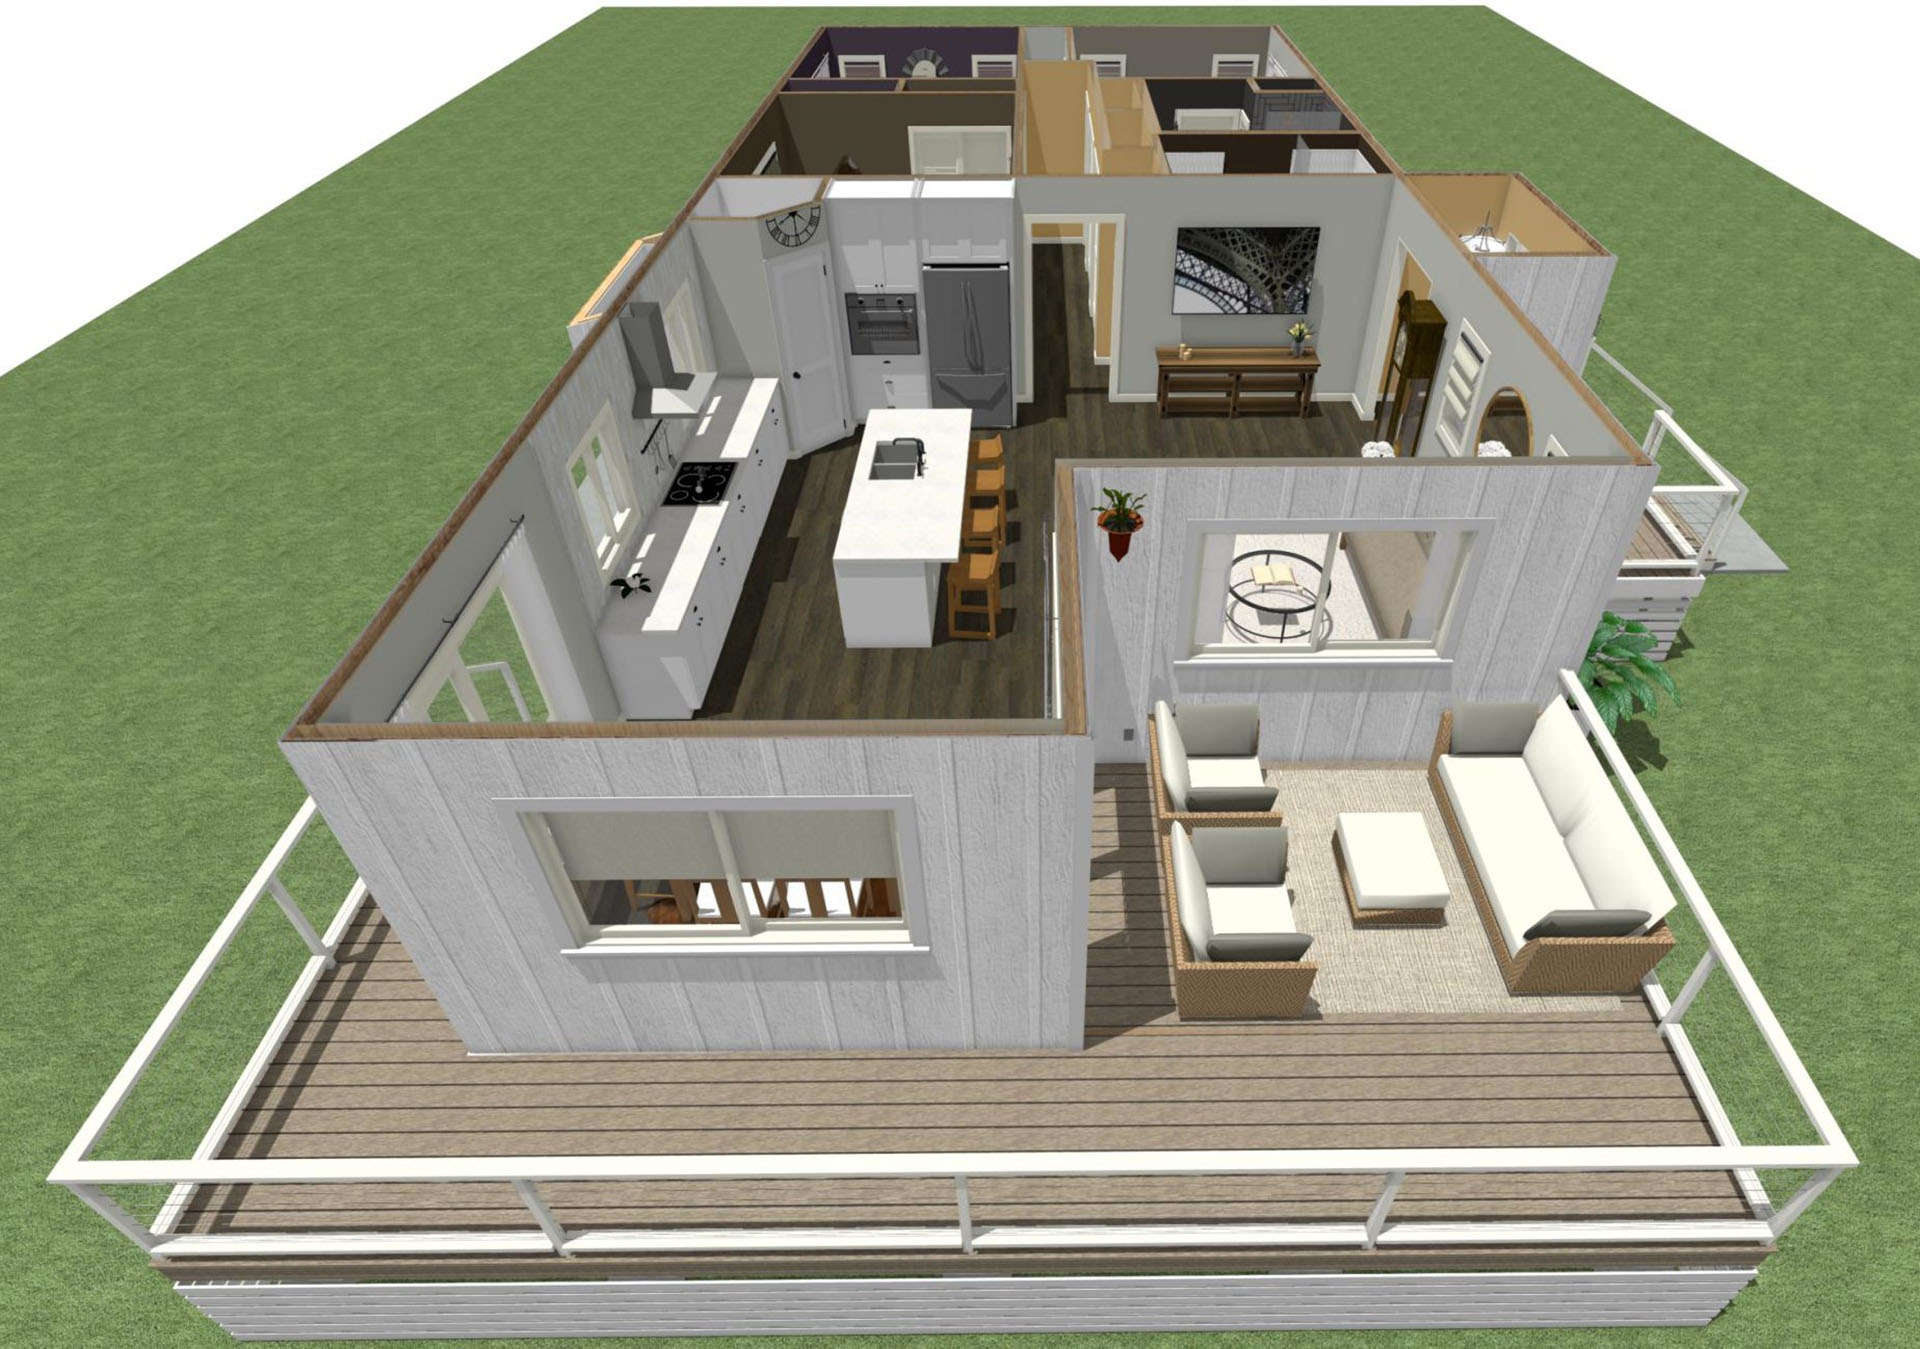 Hale Nanea floor plan overview with deck